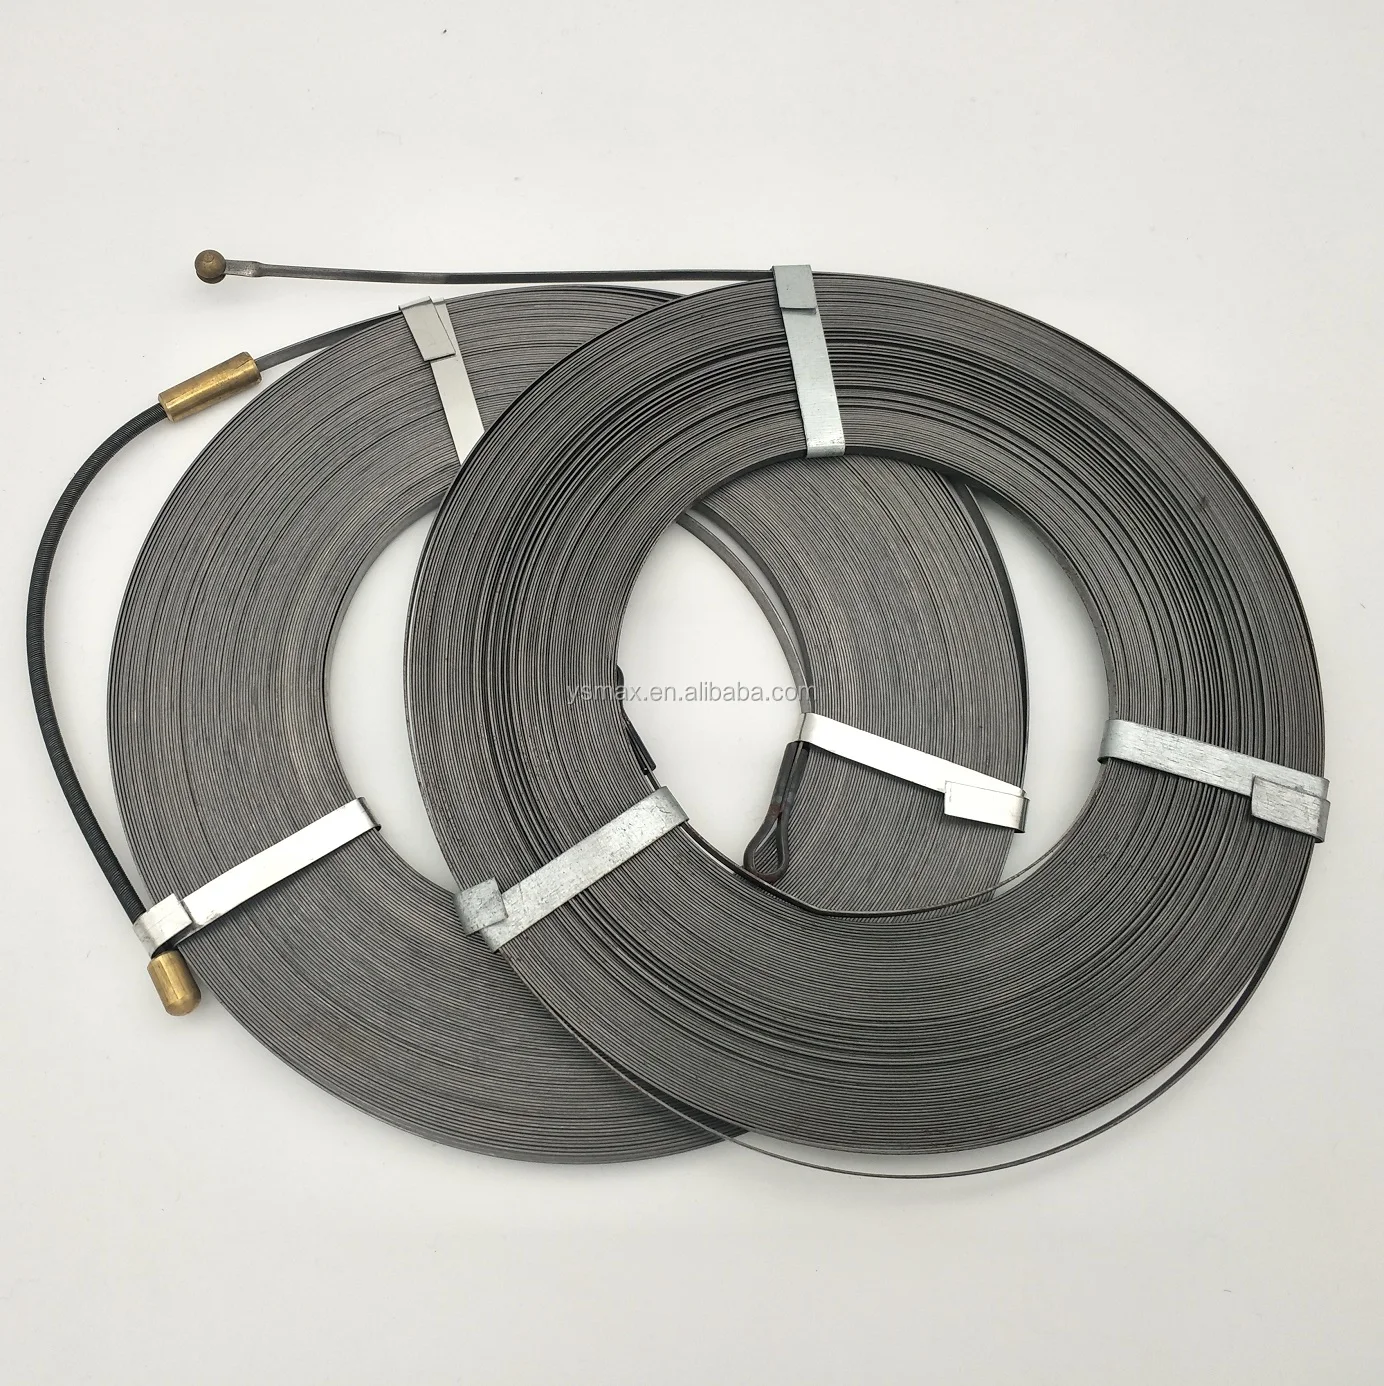 10m flessibile trefolo 0,04mm² extra sottile cavi/dekoderlitze Cable Wire 0,13 €/m 